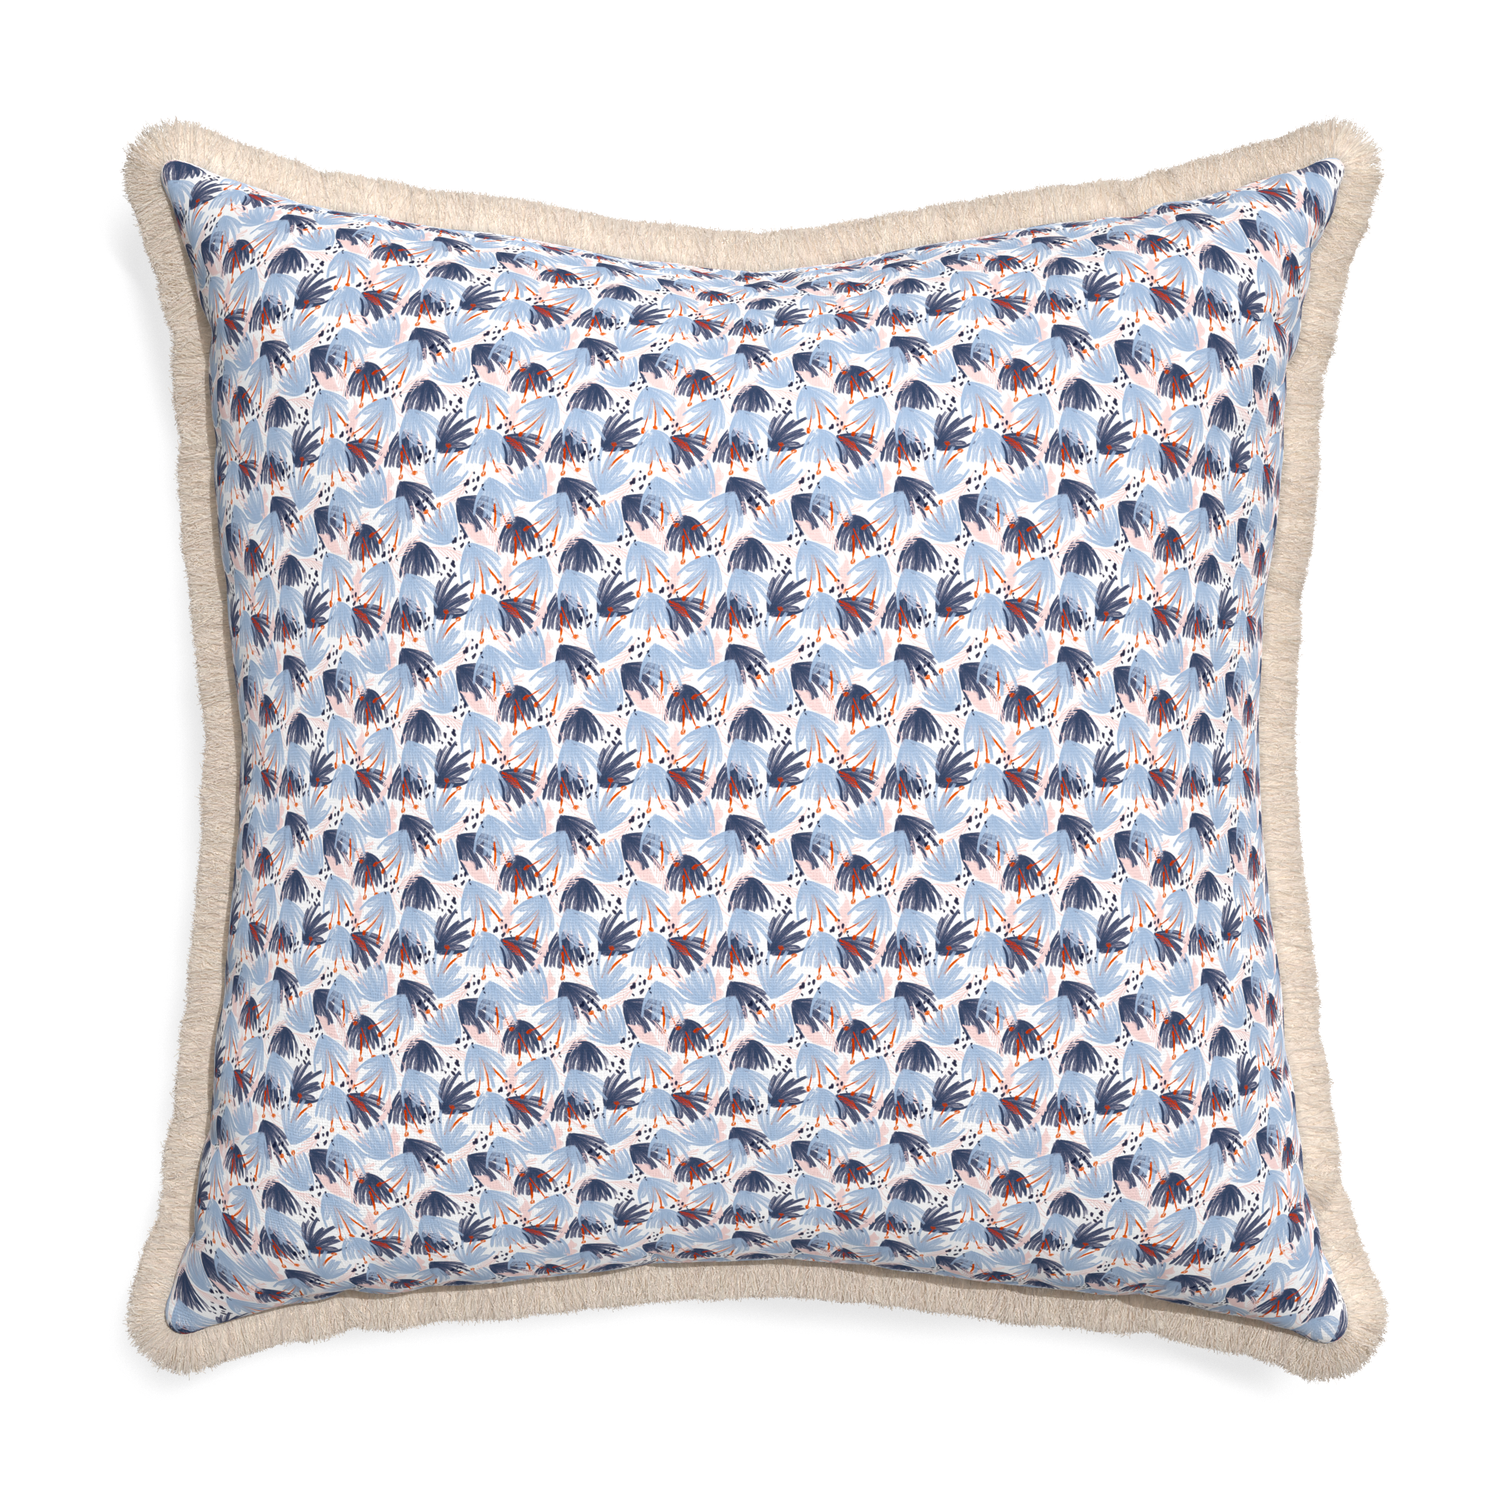 Euro-sham eden blue custom pillow with cream fringe on white background